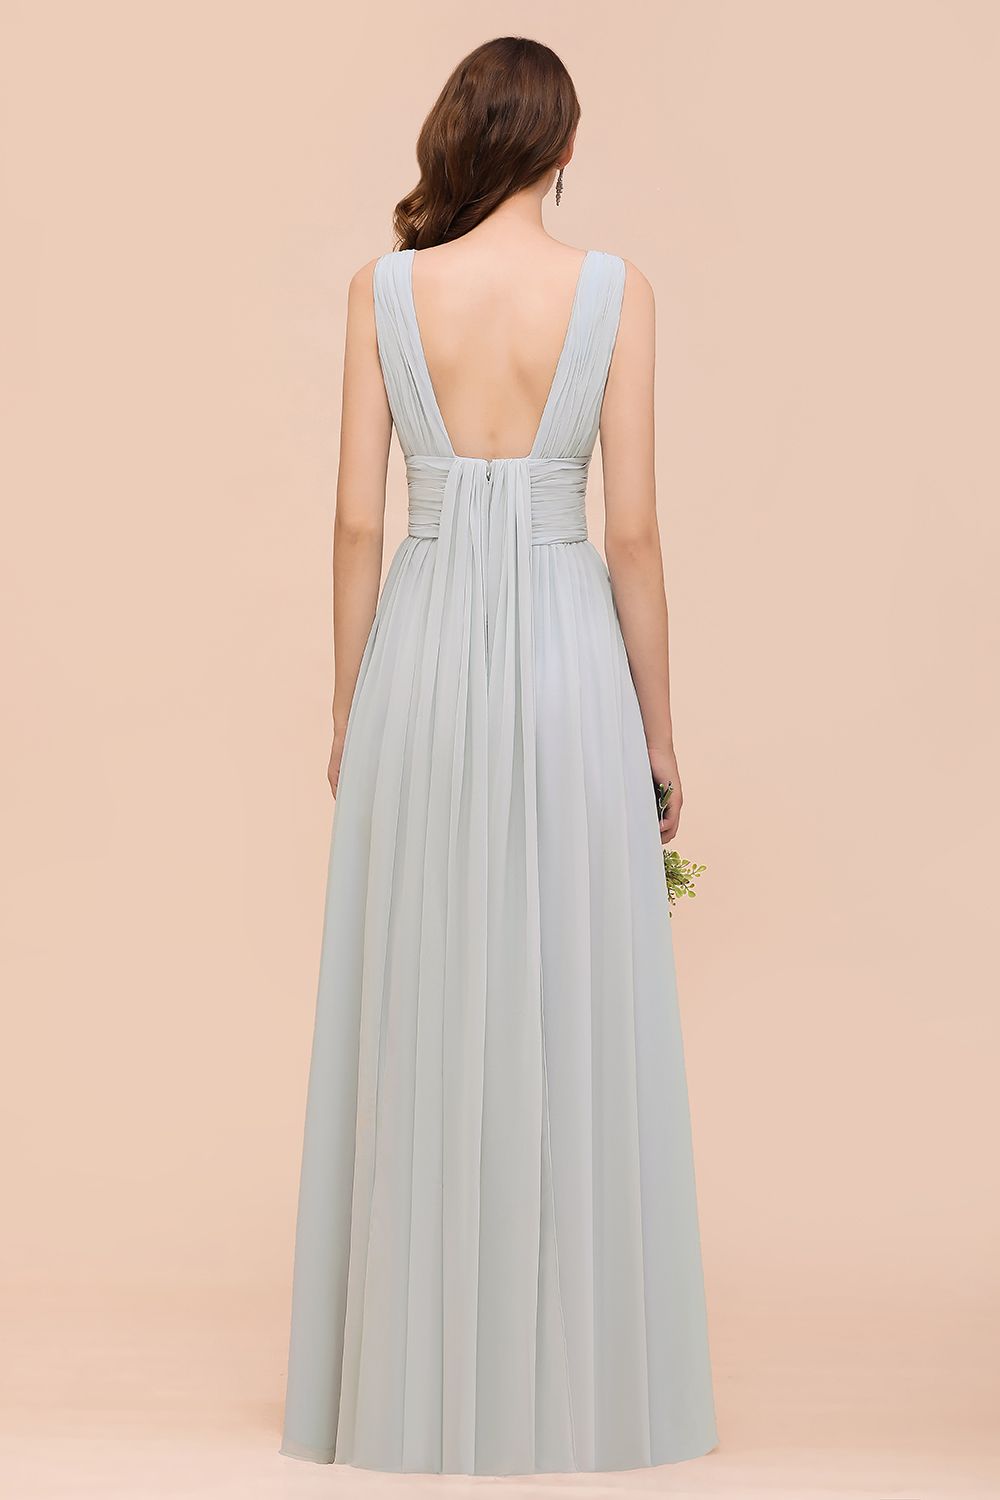 Finden Sie bei babyonlinedress.de Silber Brautjungfernkleider Lang Günstig online. Kleider Für Brautjungfern maß geschneidert bekommen.